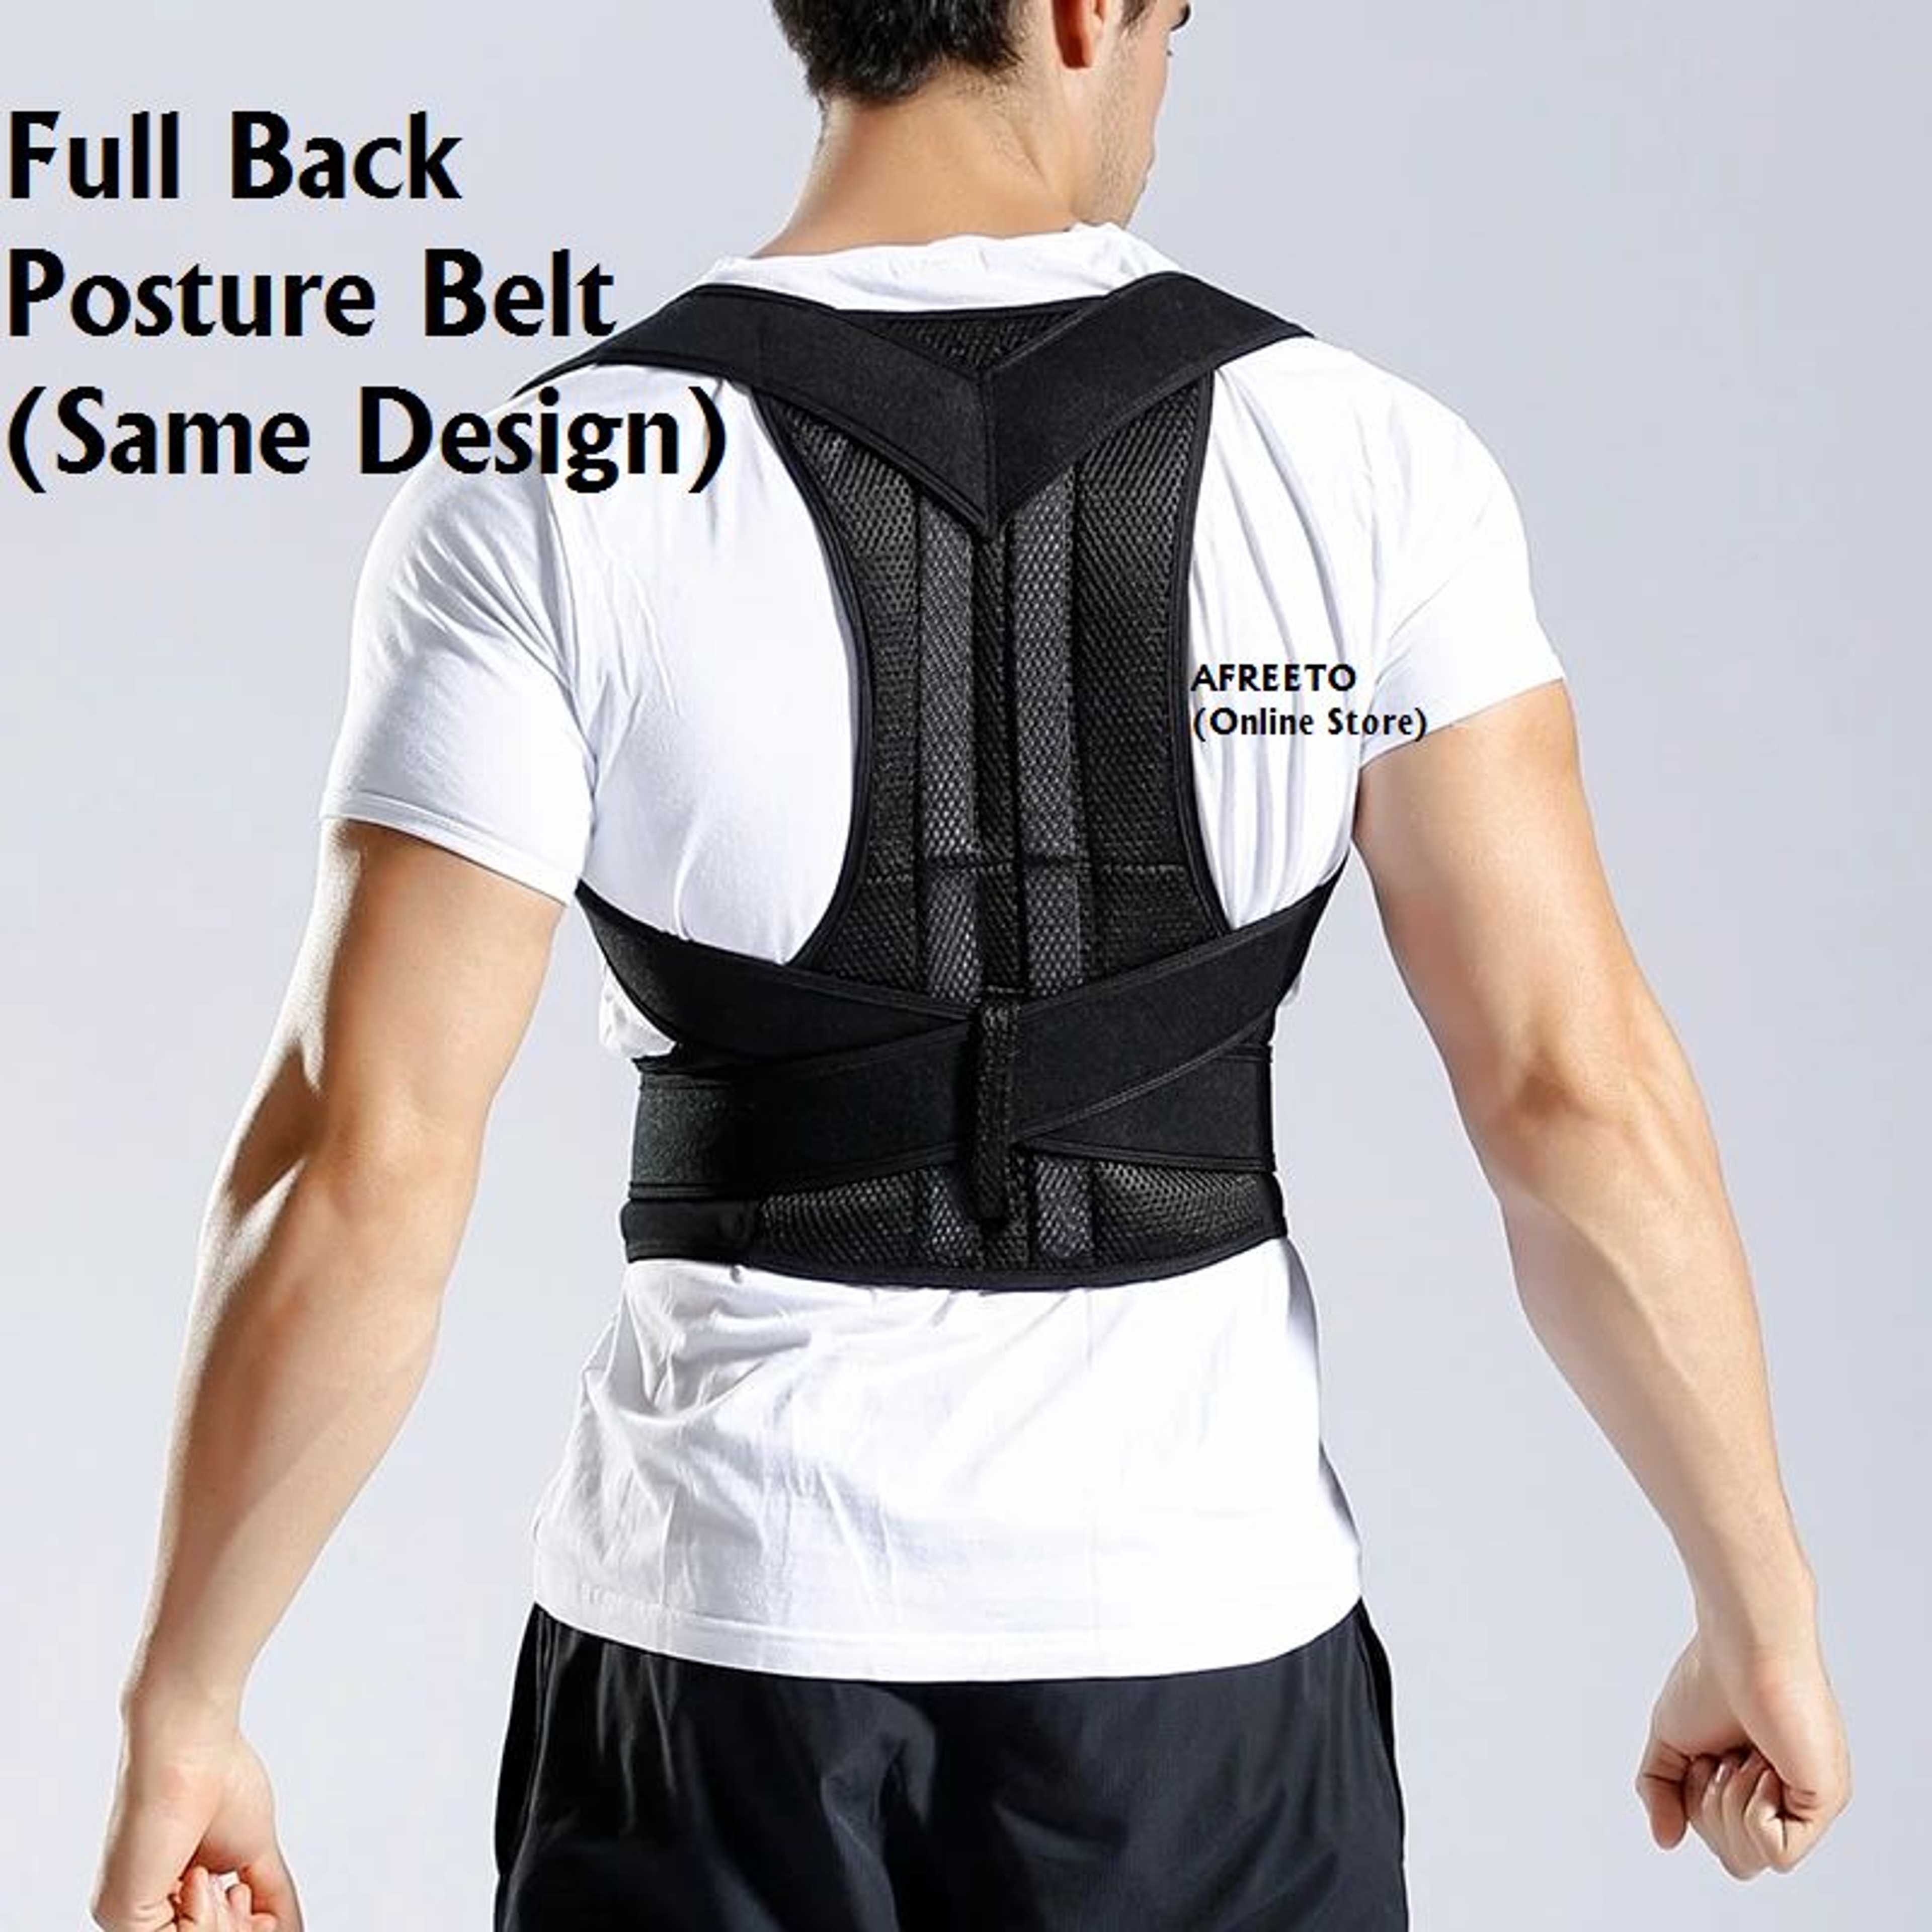 "Adjustable Posture Corrector Brace Shoulder Back Support Belt for Male Female Brace and Back Support Belt "